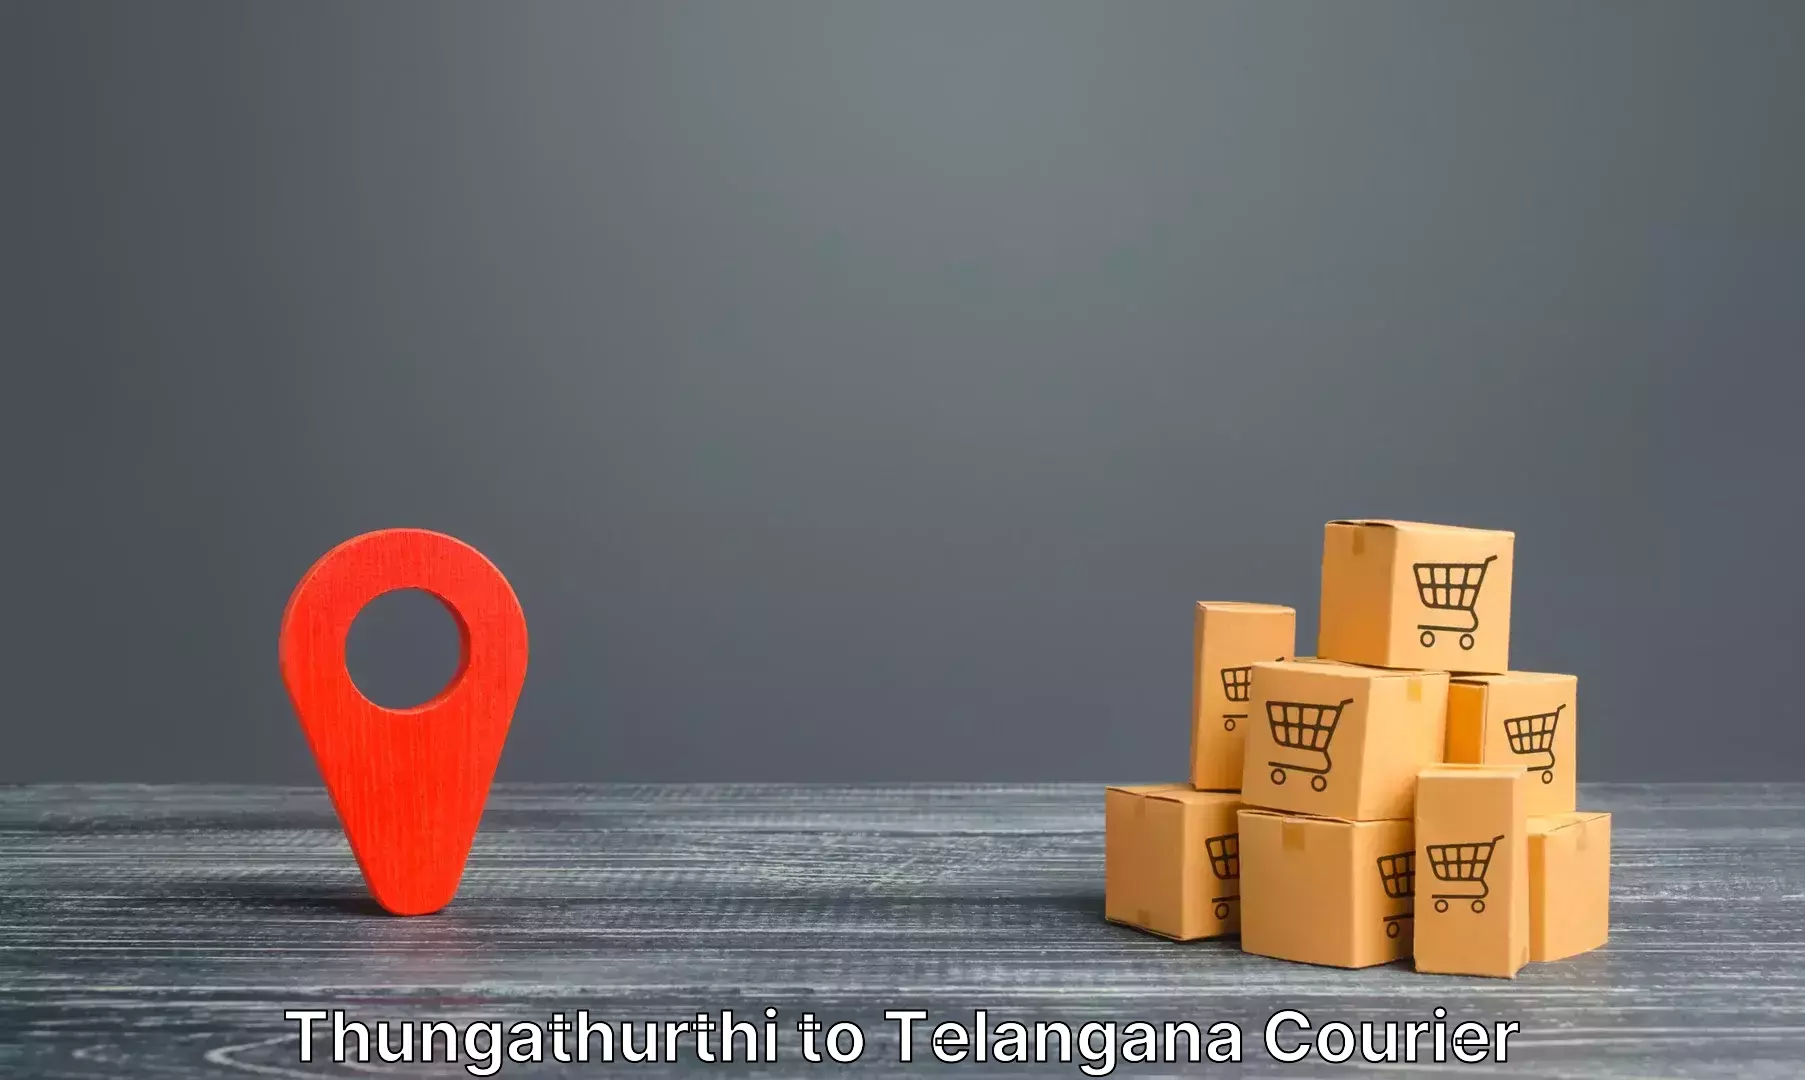 Luggage shipping service Thungathurthi to Telangana